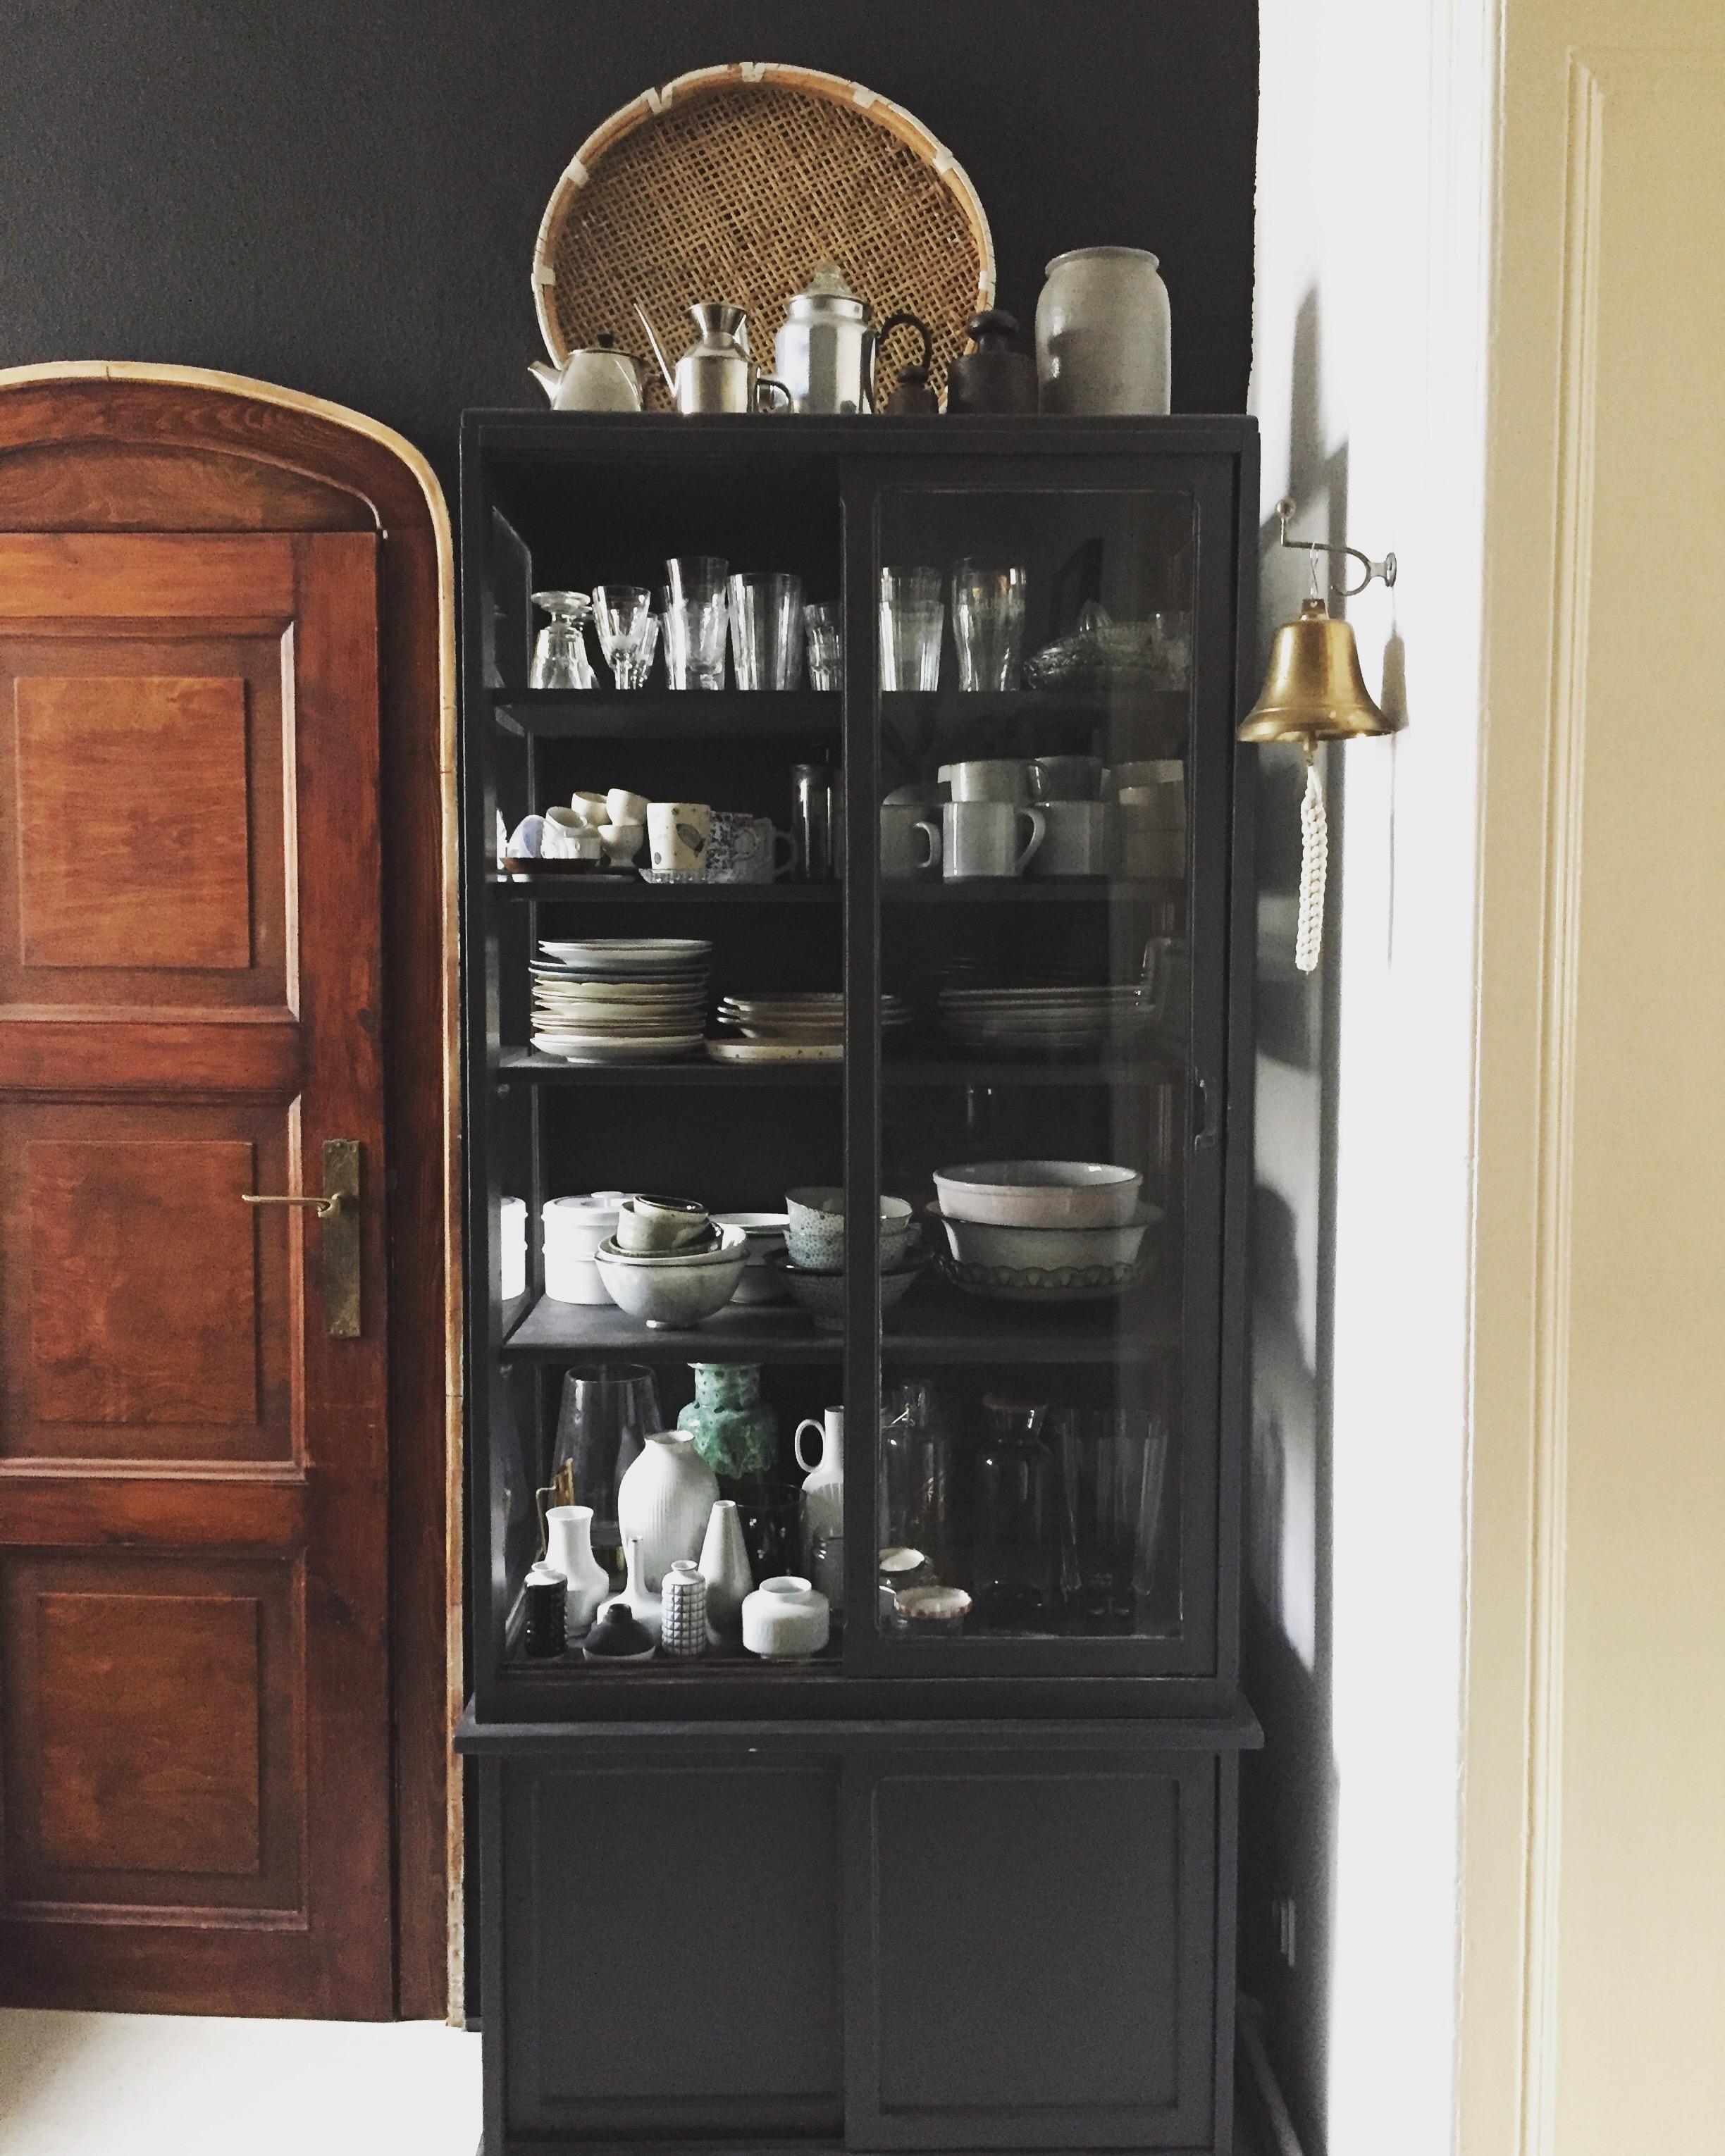 Sammelsurium
#interior #vintage #küche #kitchendetail #hygge #altbau